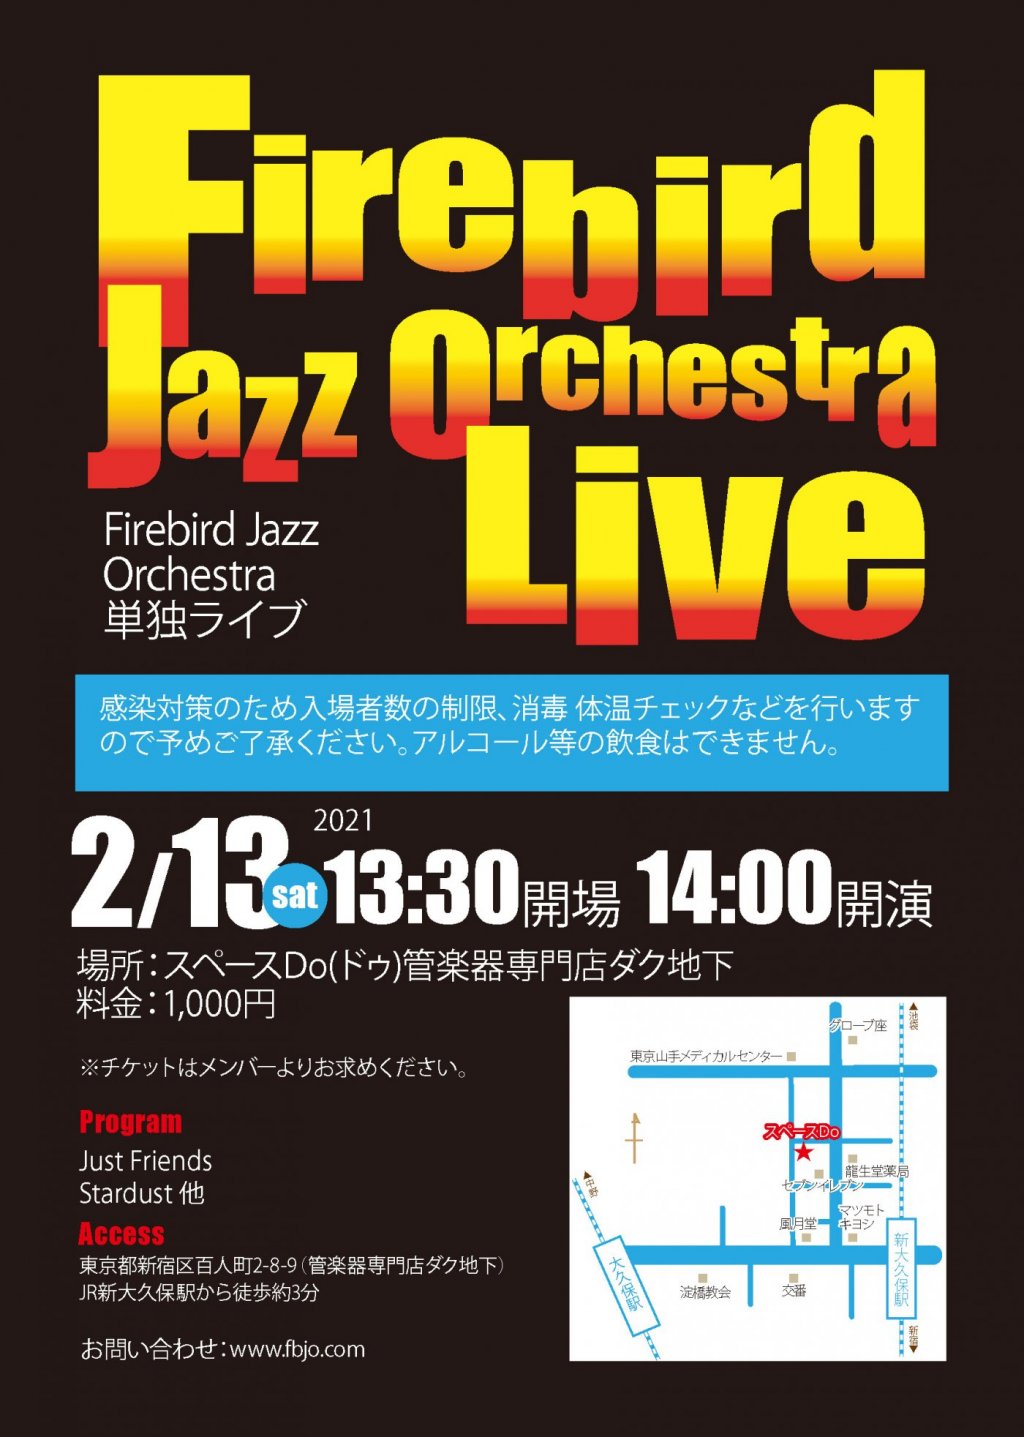 【 延期 】Firebird Jazz Orchestra Live 